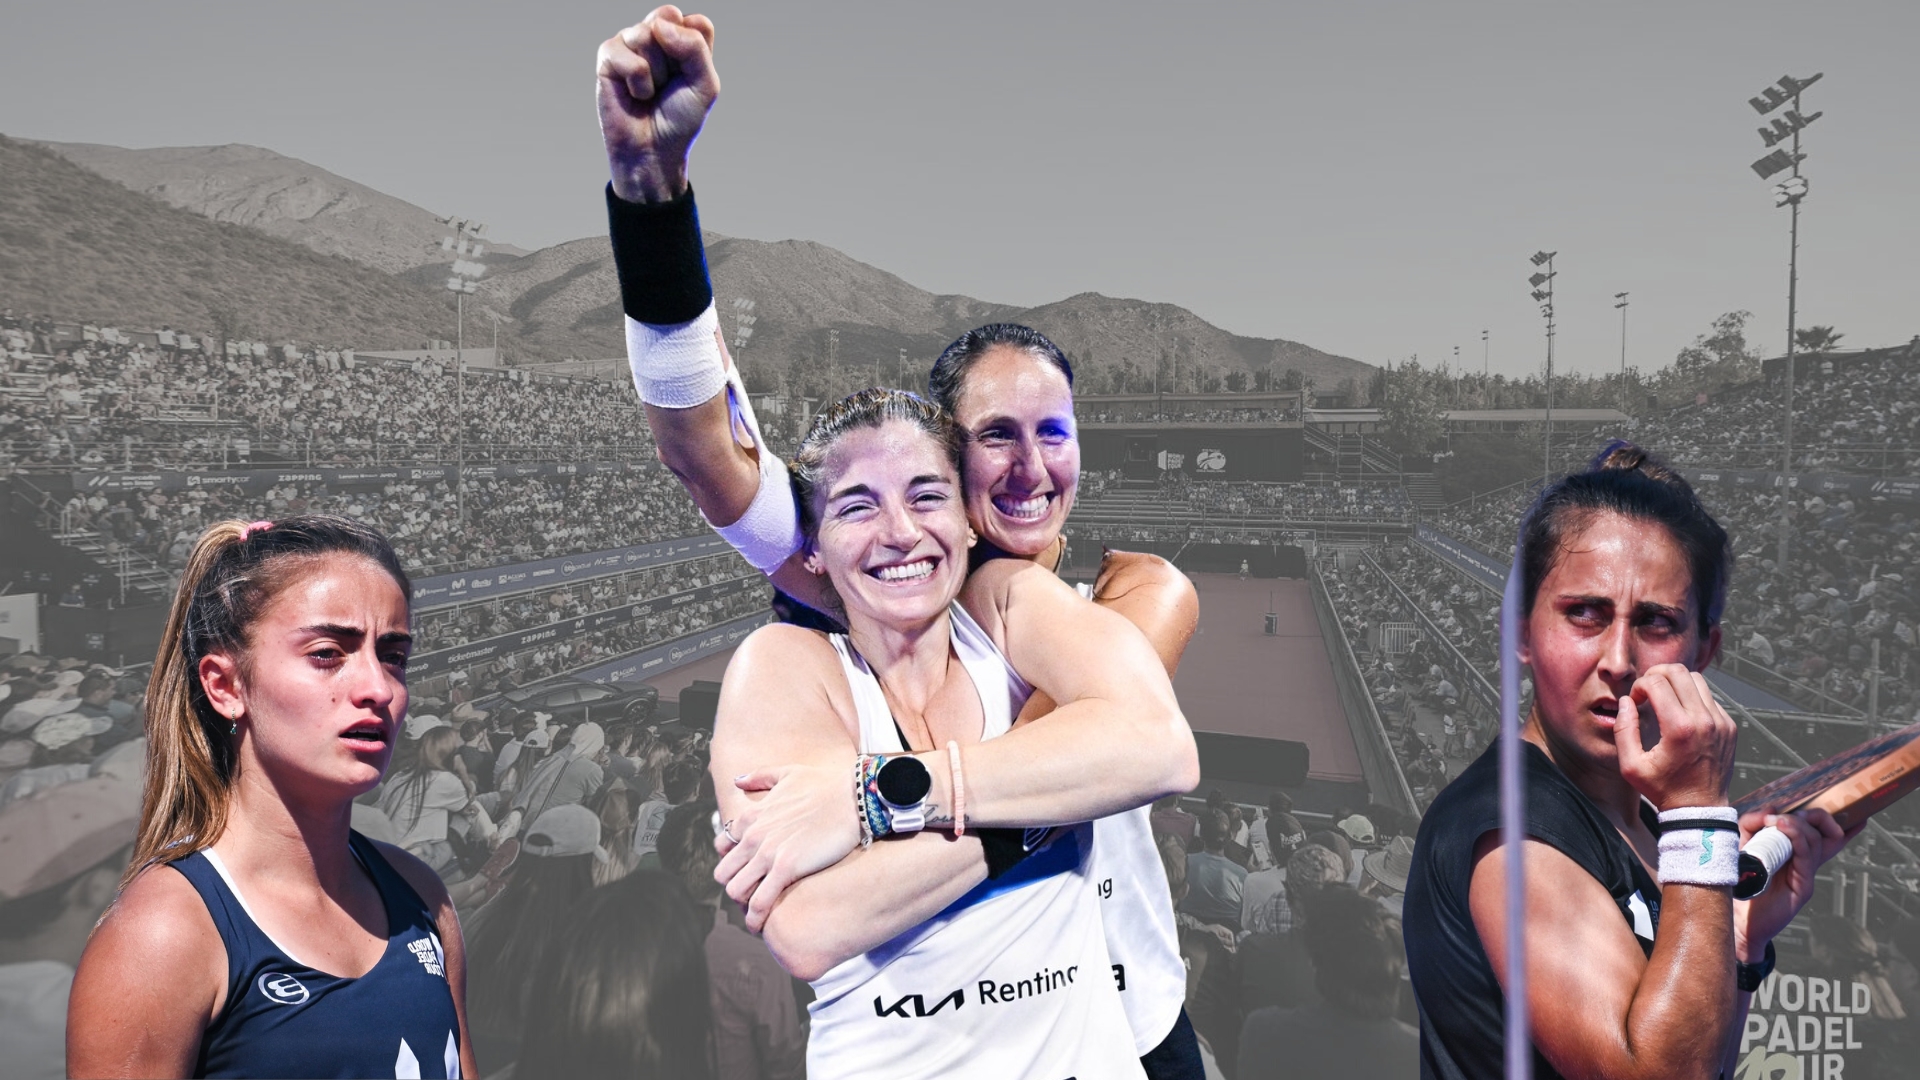 Salazar / Triay : victoire au WPT Chile Open et première place mondiale !